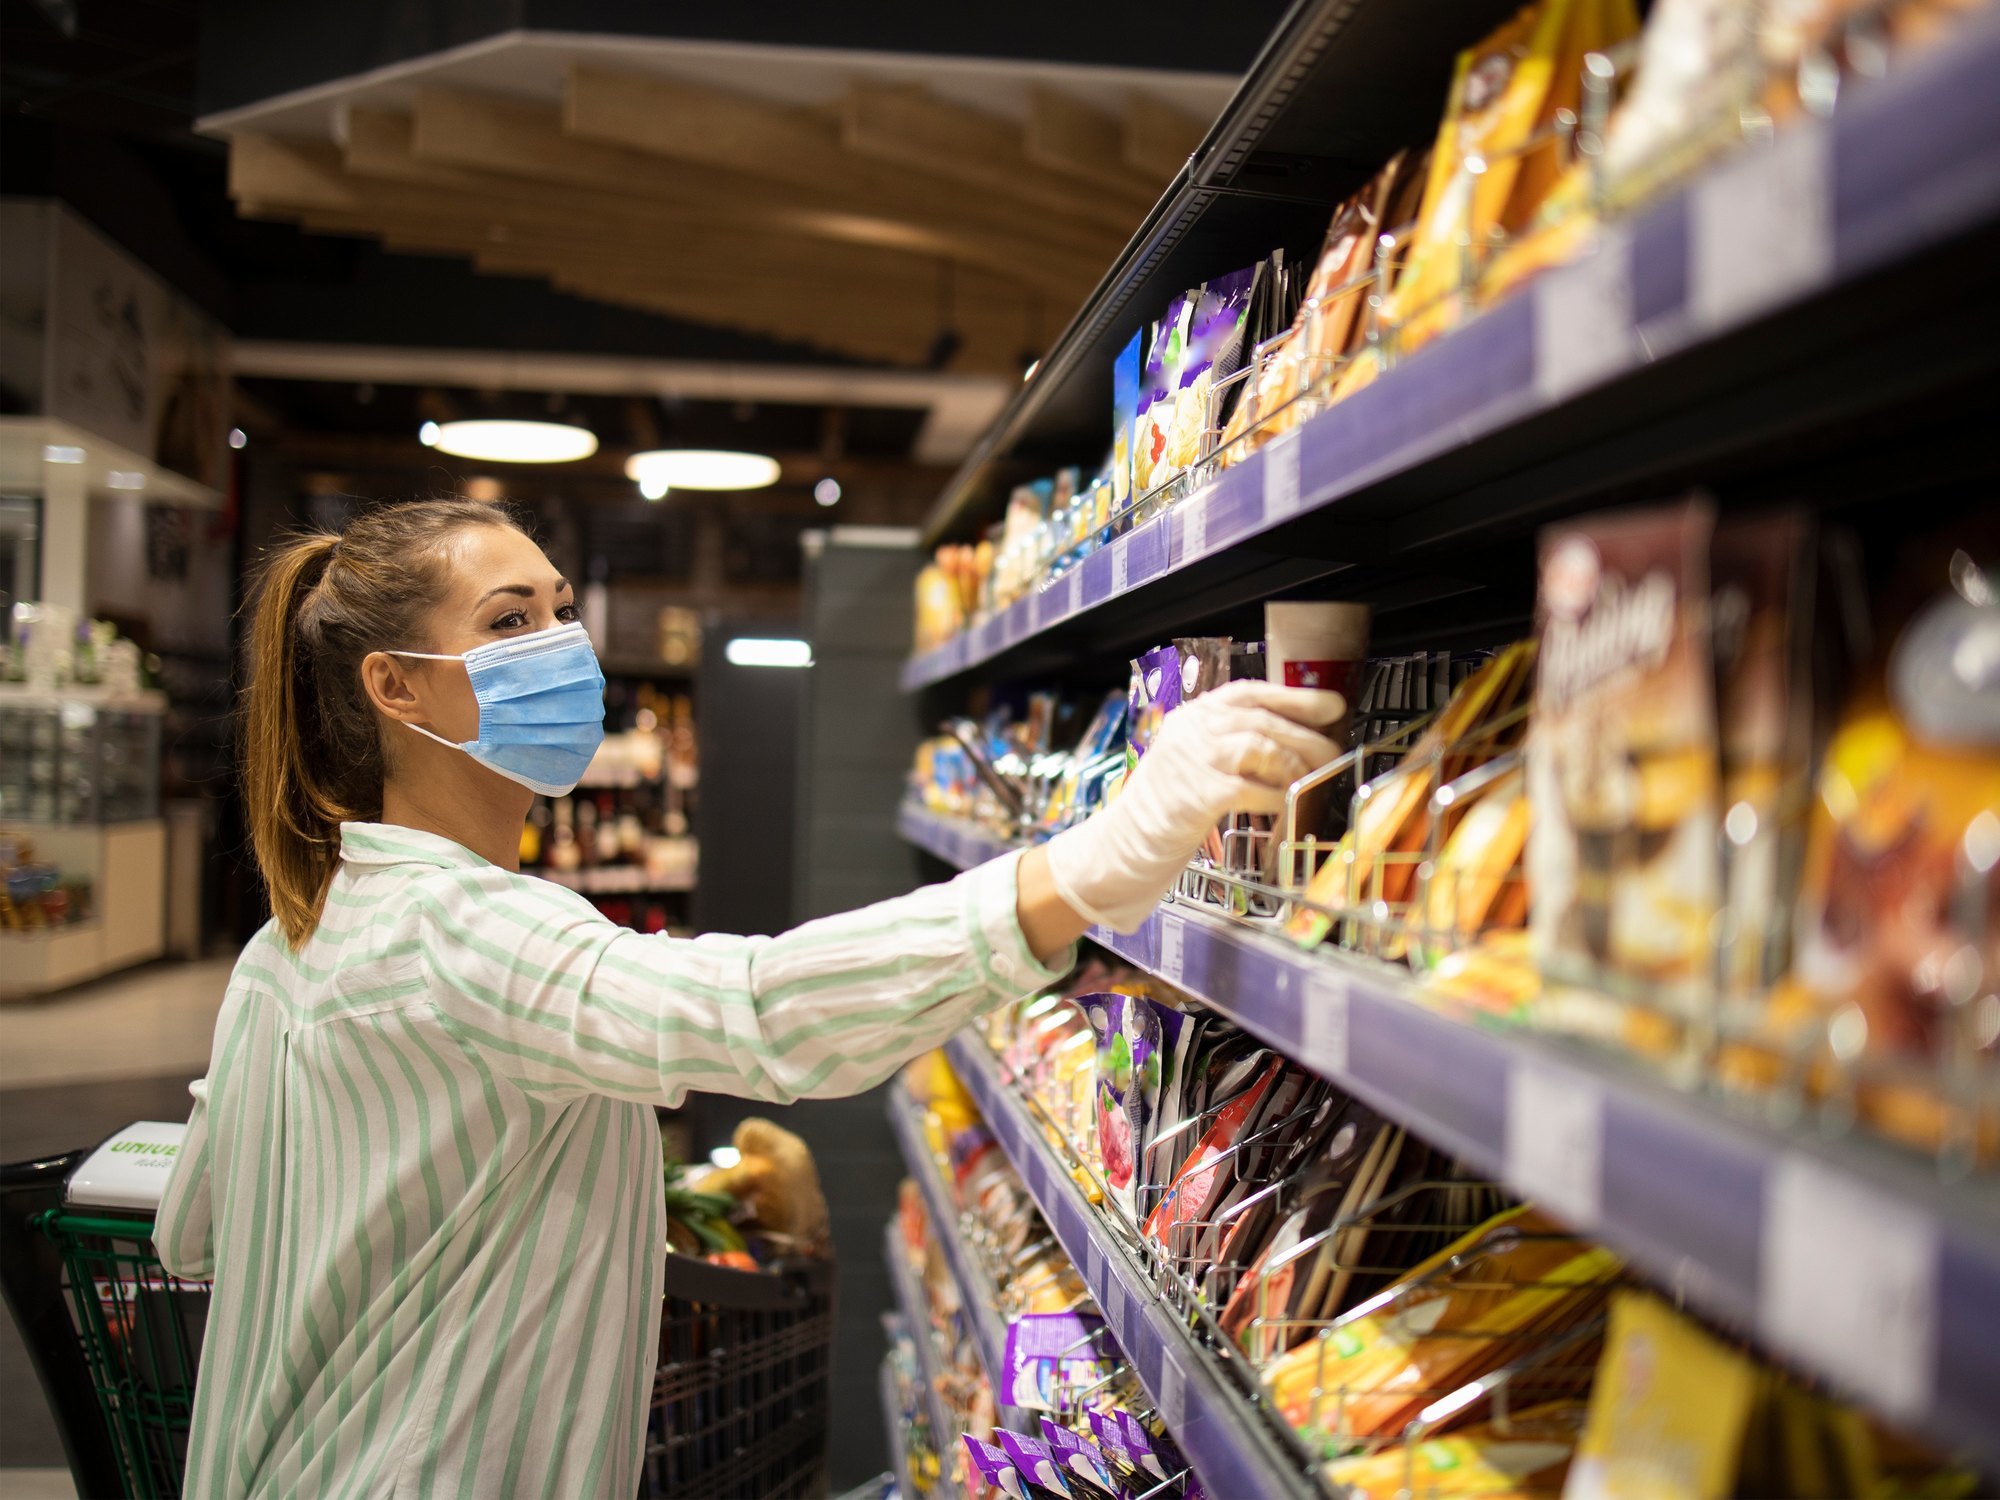 La mejor marca blanca de supermercado en España, según la OCU (y no es Hacendado) - Los Replicantes